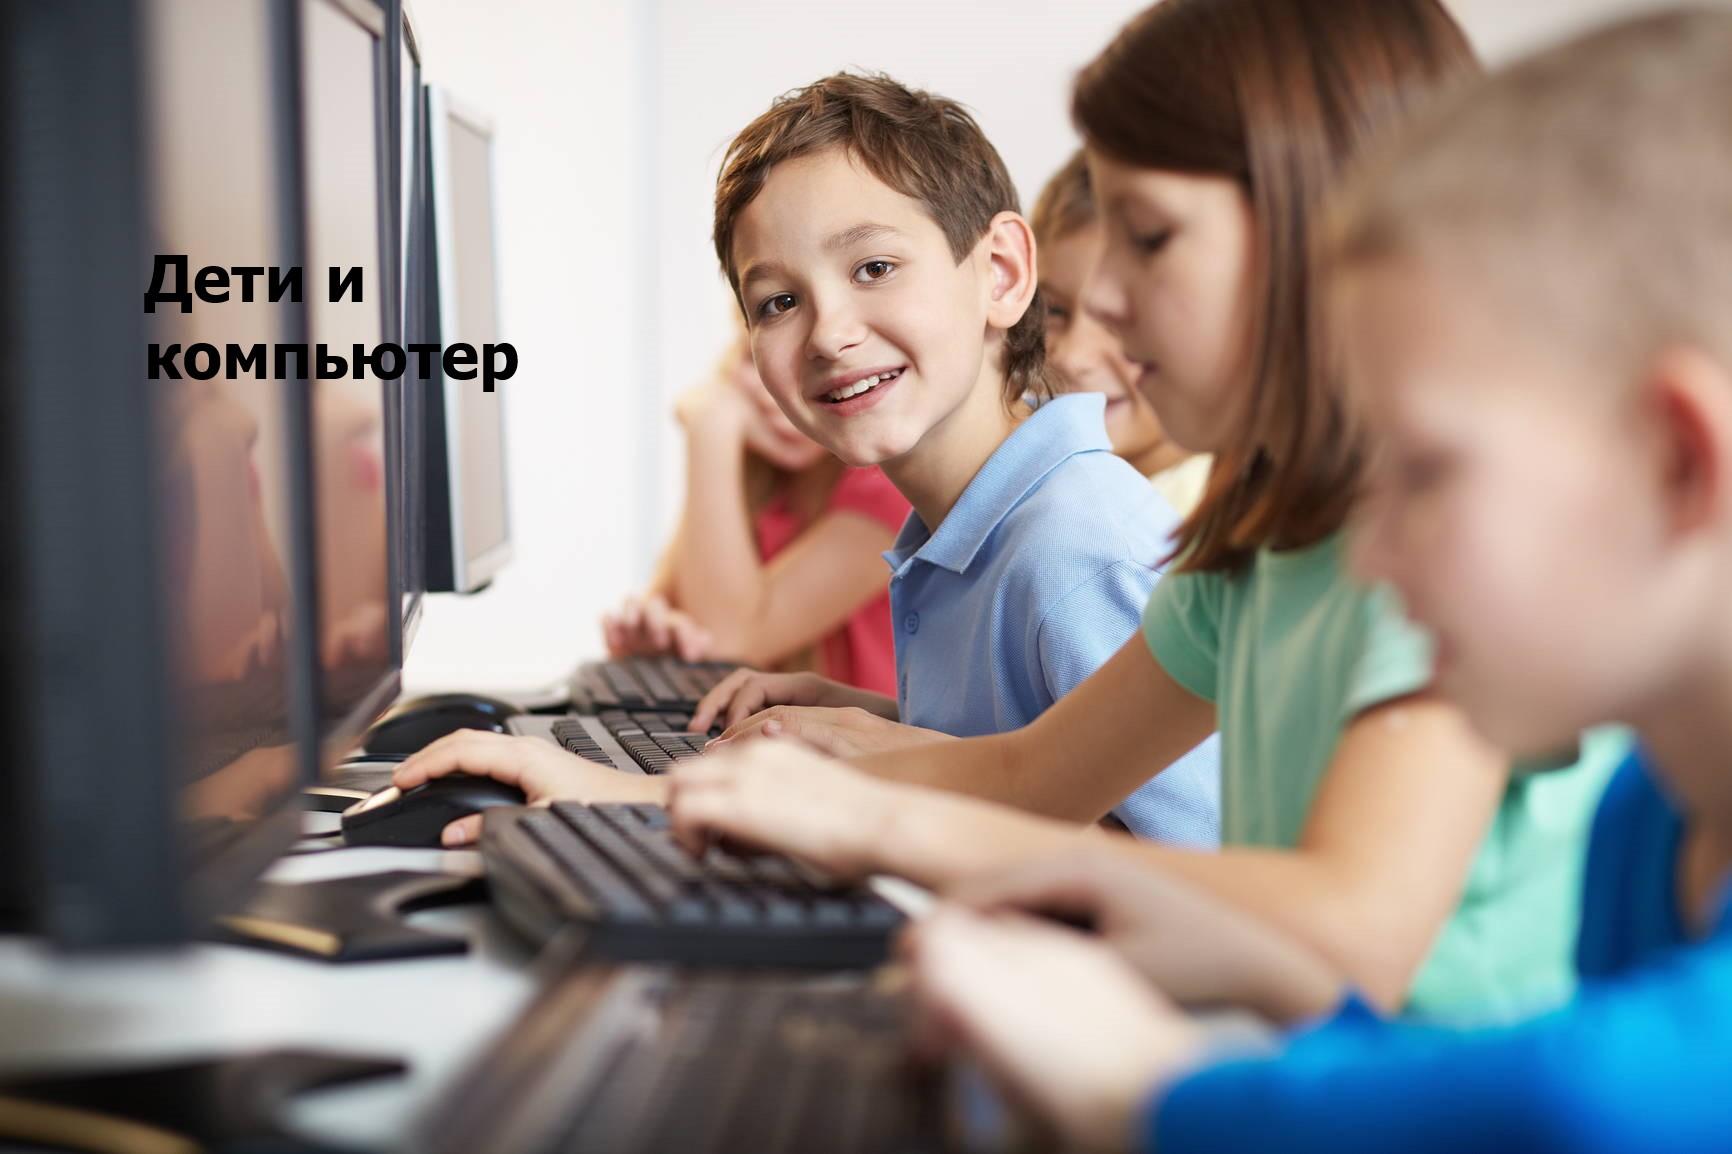 Компьютер дети школа. Компьютер для детей. Ребенок за компьютером. Подросток за компьютером. Подросток и компьютер.